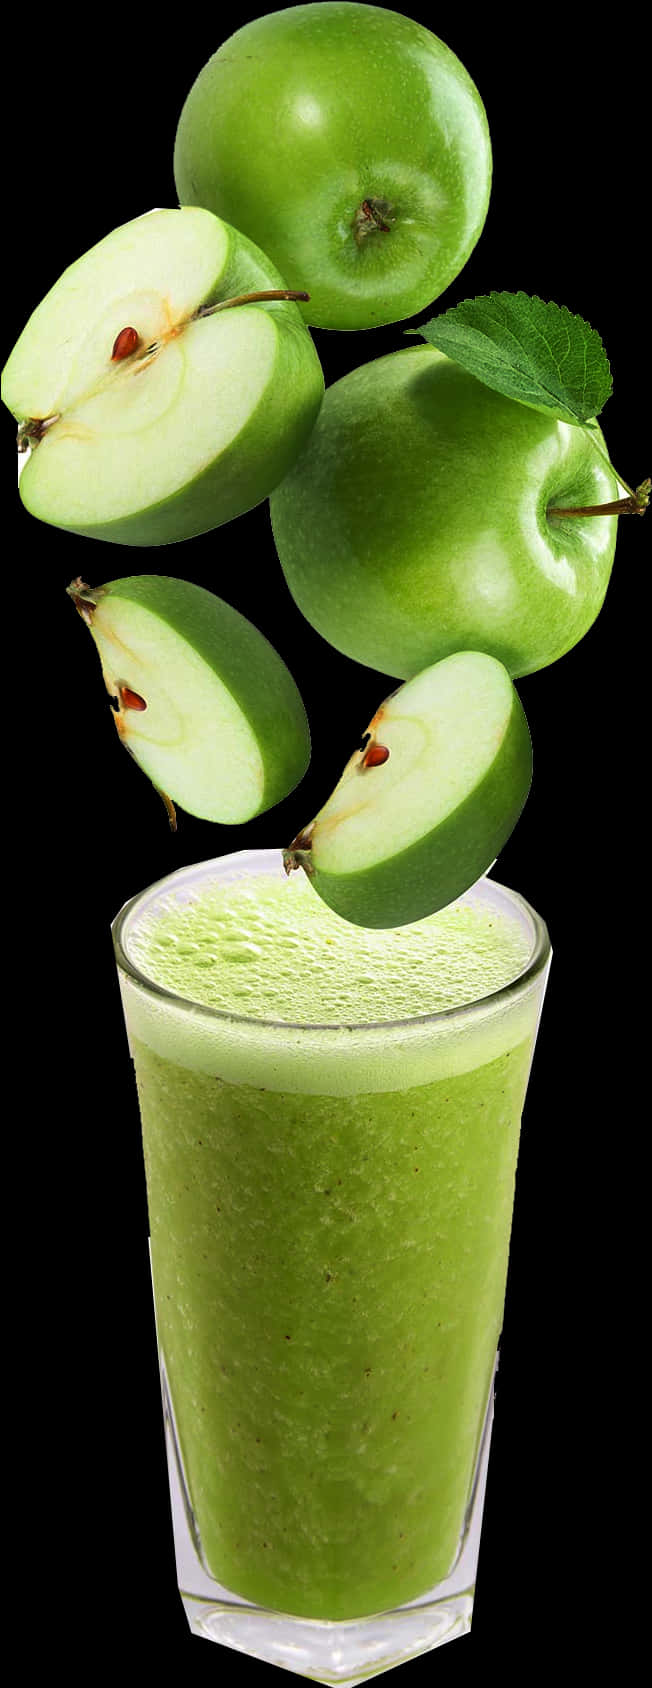 Green Apple Juice Freshness